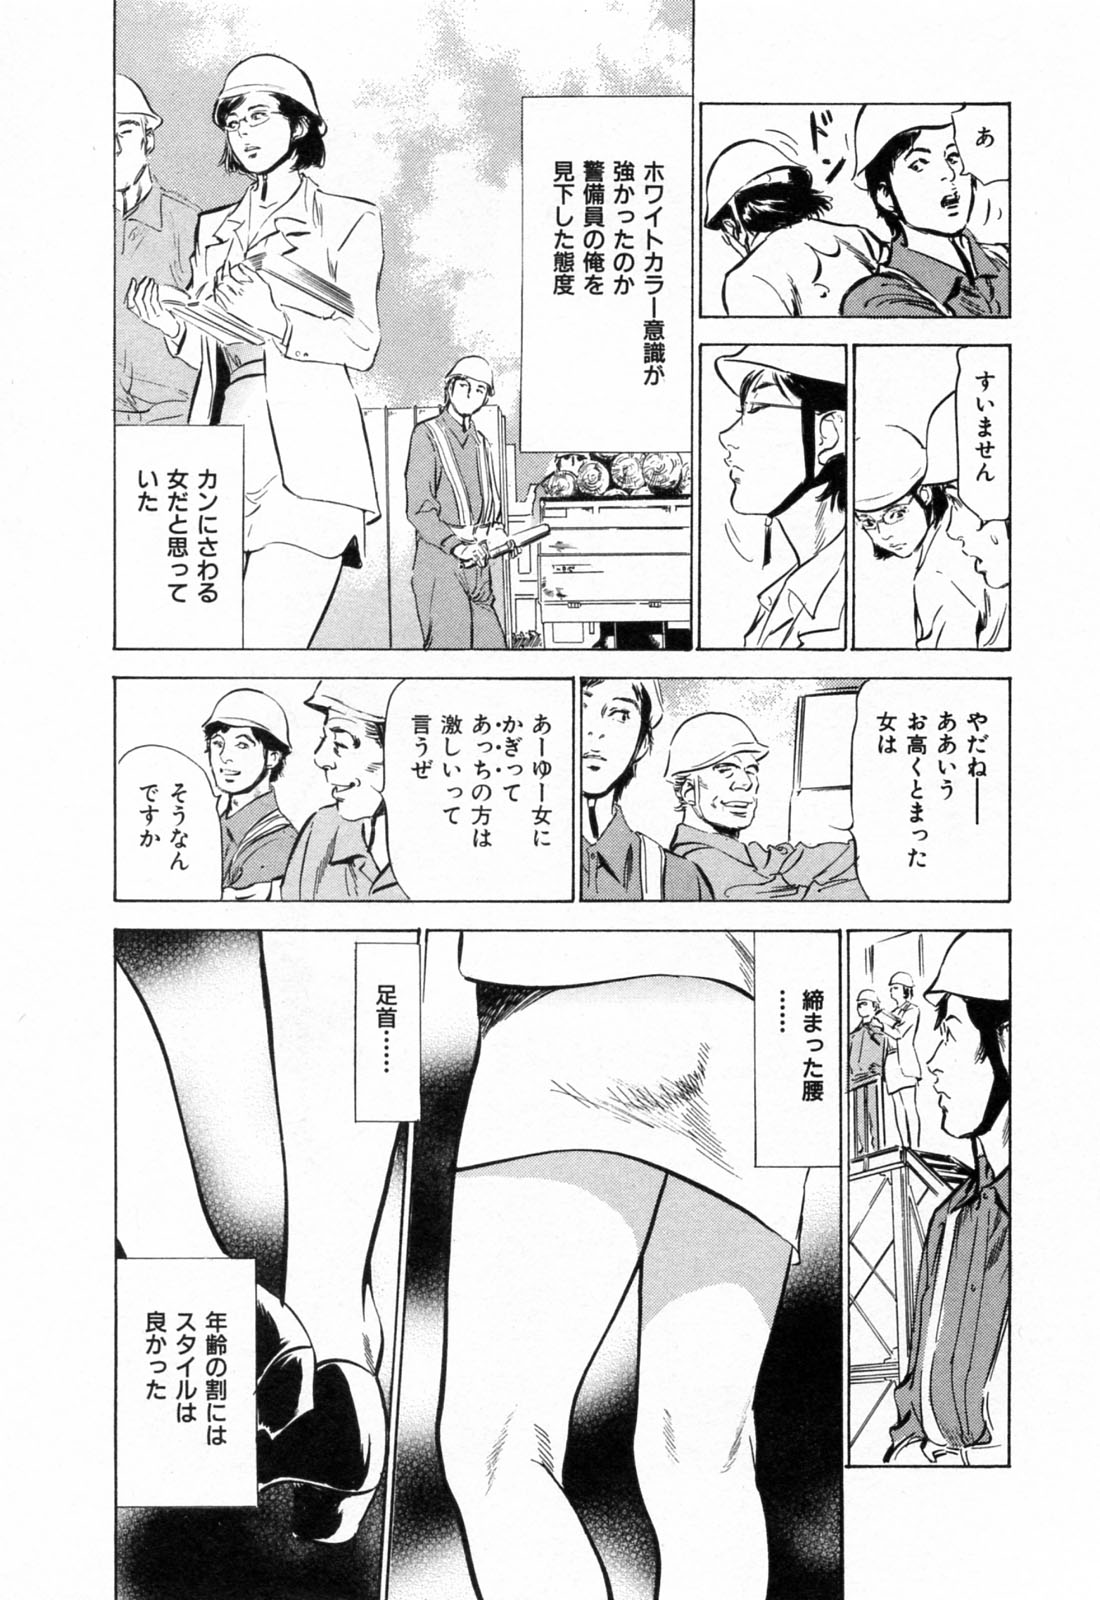 [Hazuki Kaoru] Gokinjo Okusama no Naishobanashi 1 page 9 full